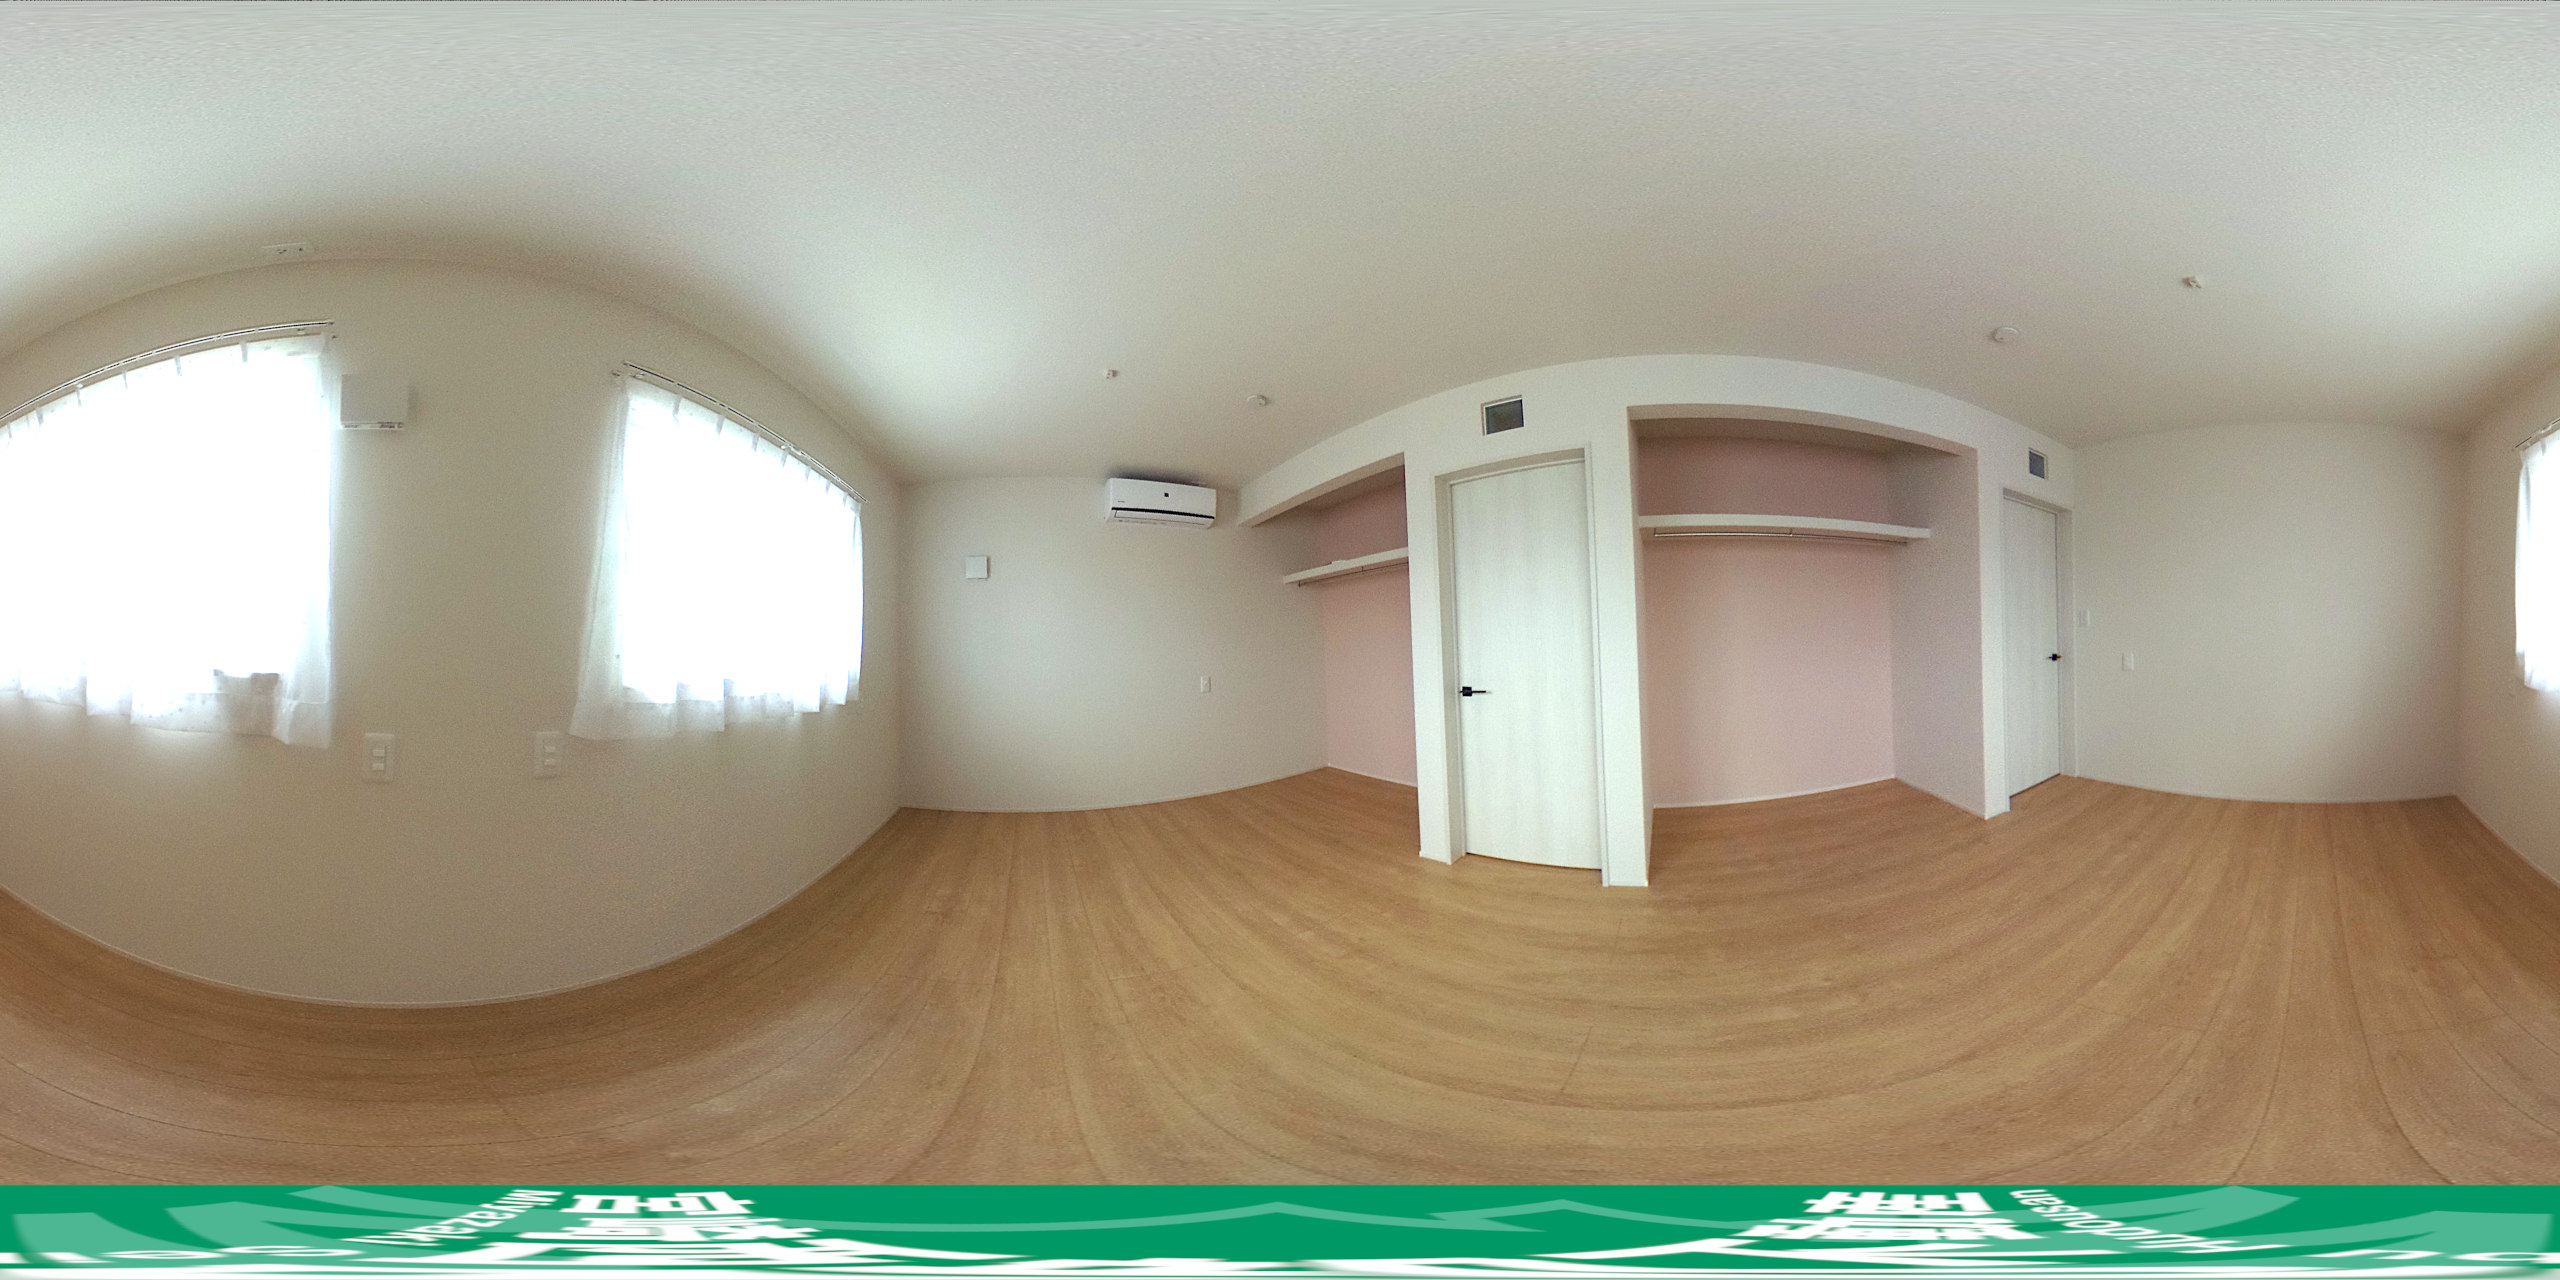 【2階洋室】360度パノラマビュー。マウスやタッチ操作で全方位を自由に見渡せます。